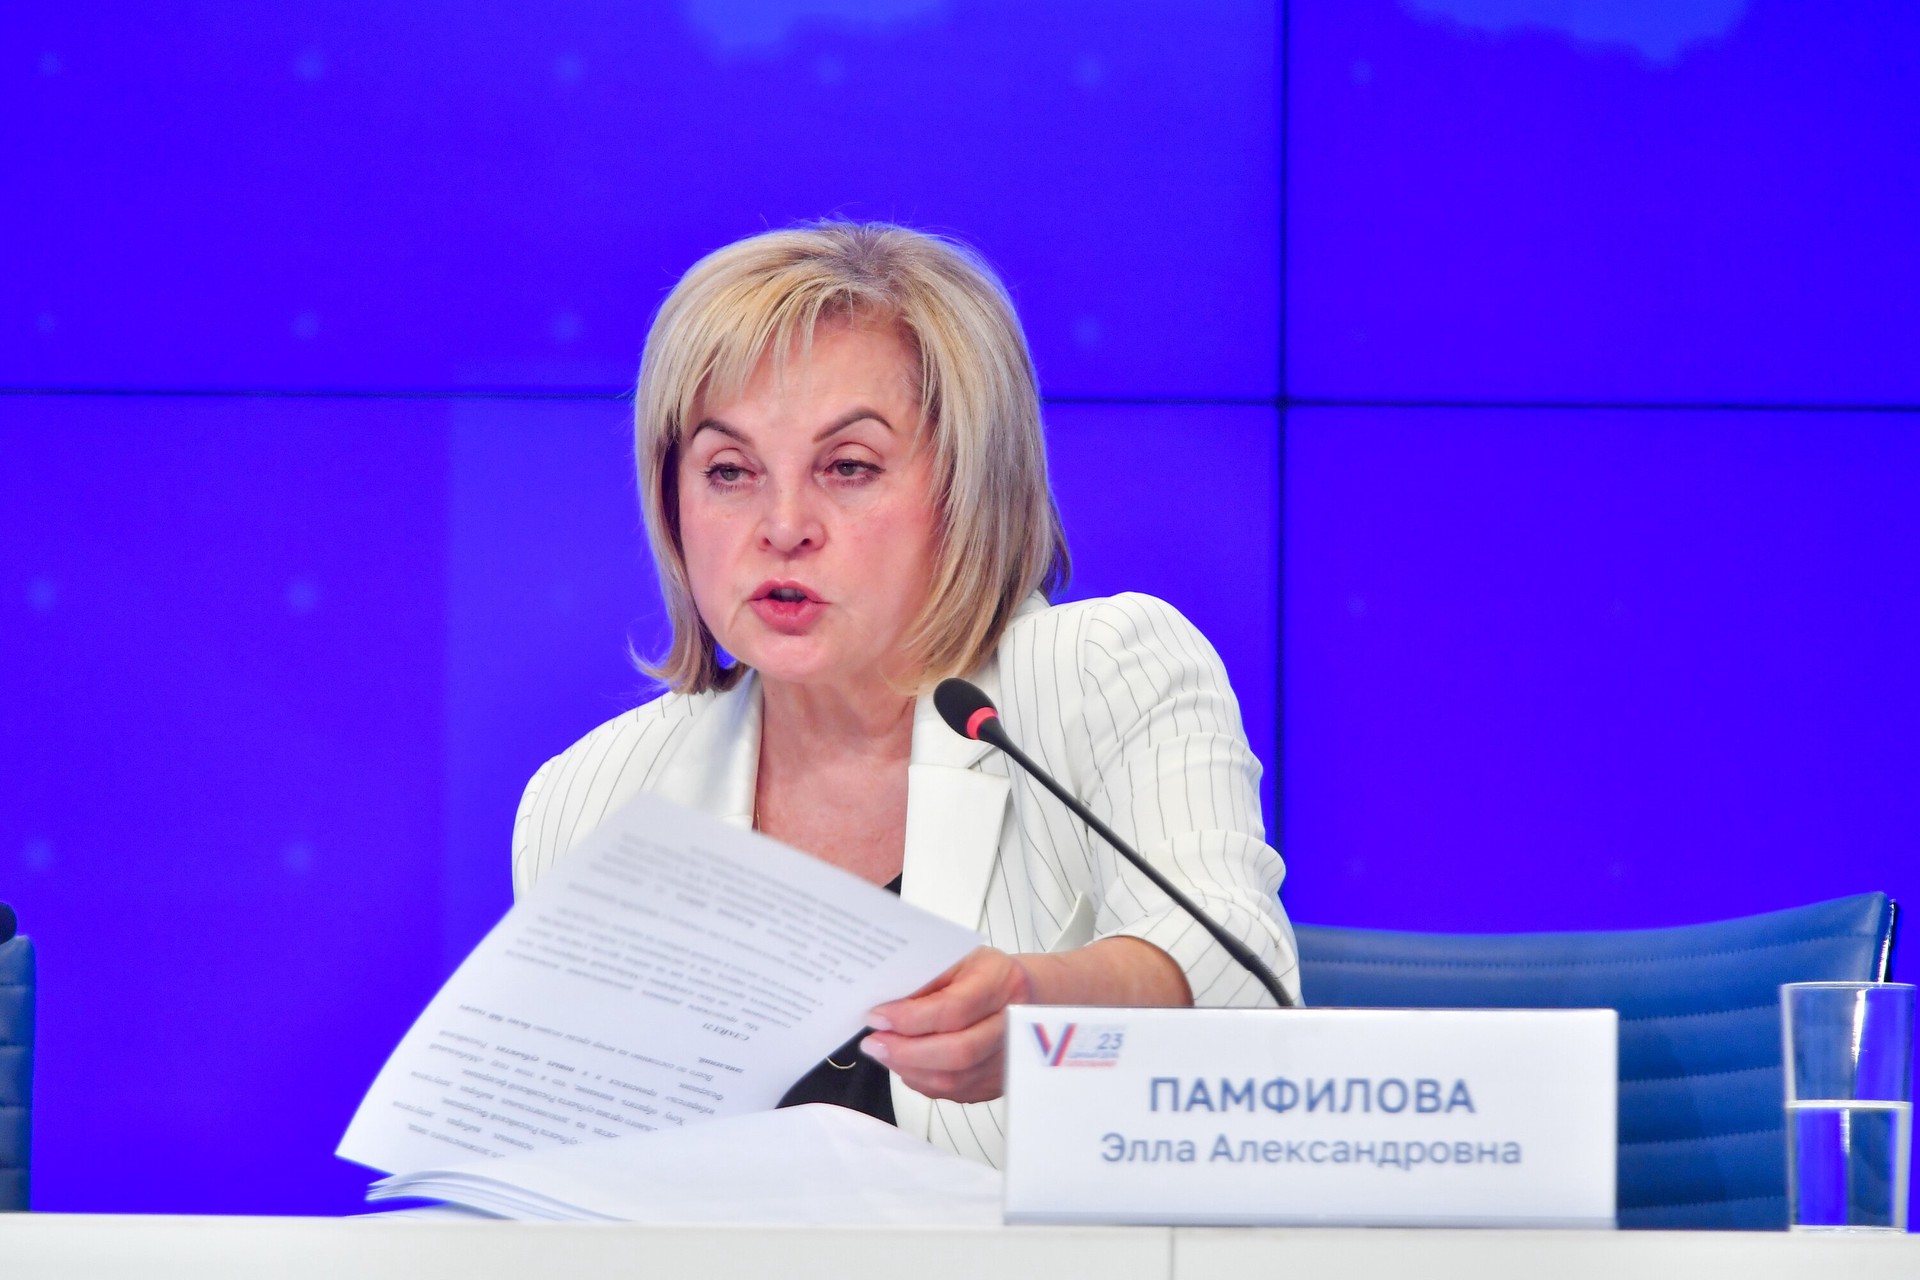 Памфилова сообщила, что на выборы президента РФ приедут международные наблюдатели